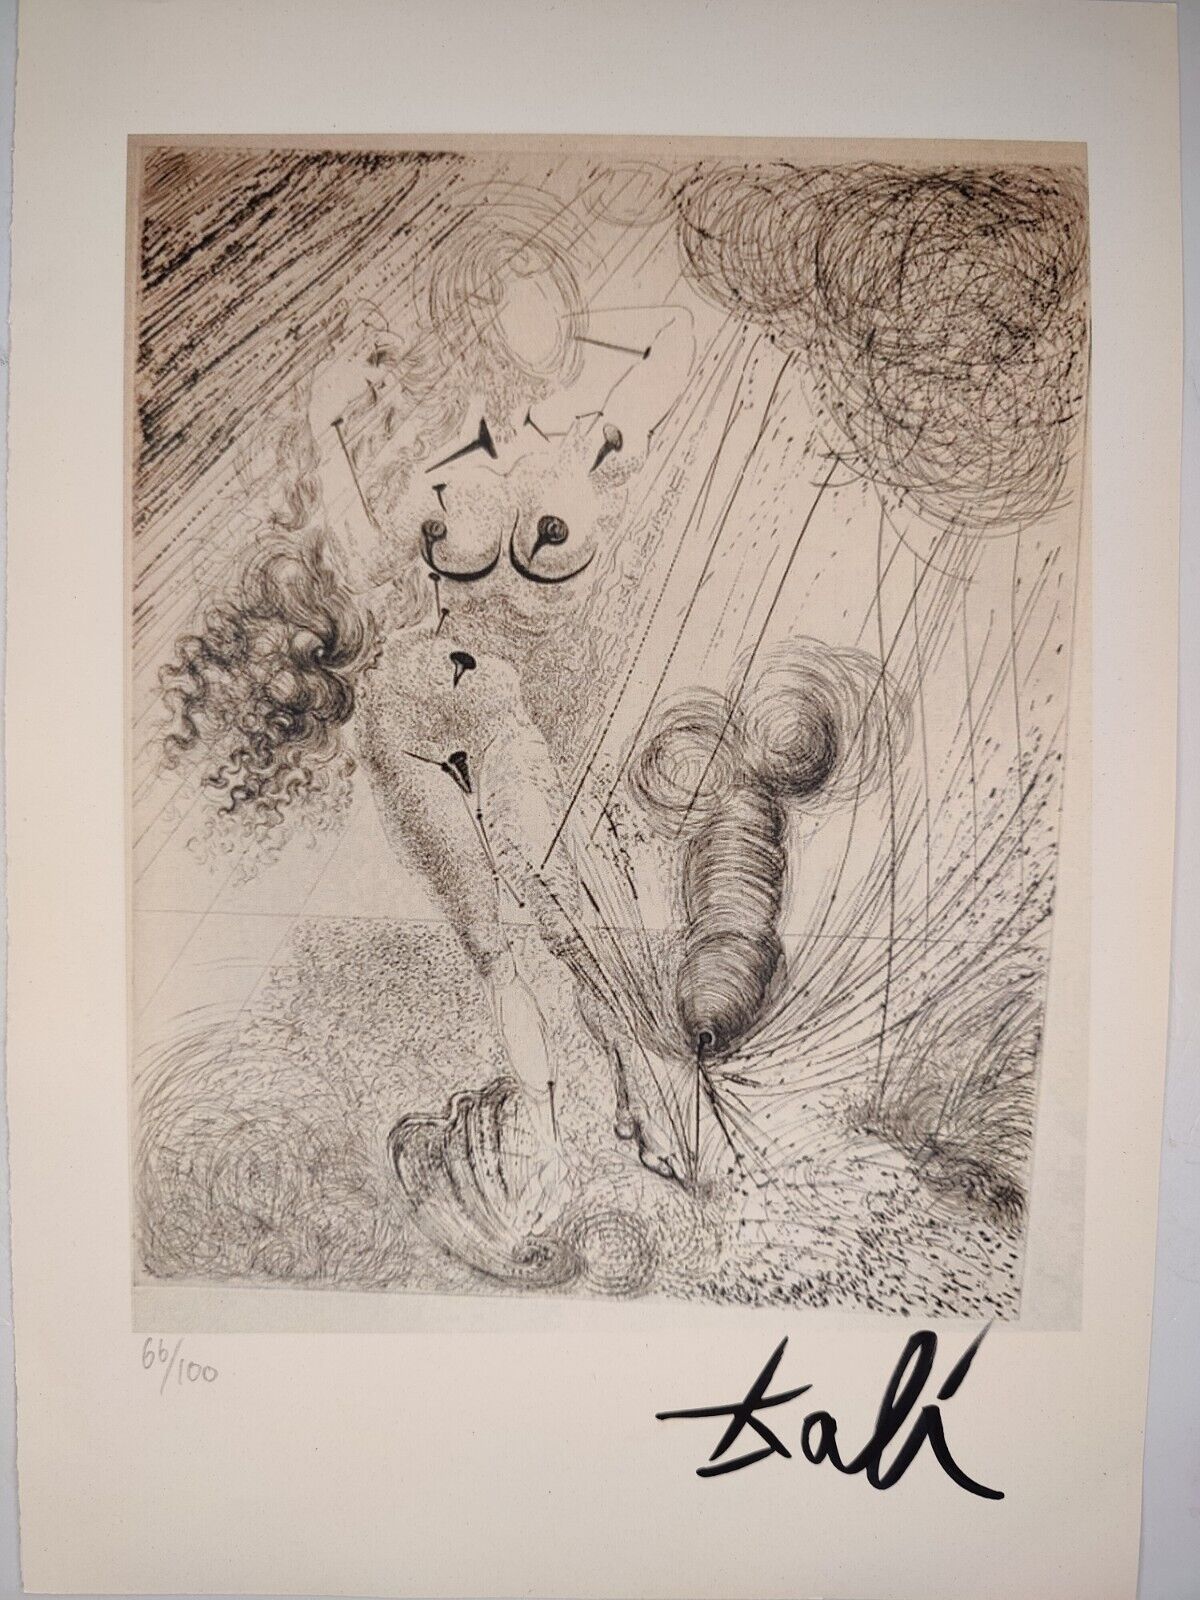 Salvador Dali COA Vintage Signed Art Print on Paper Limited Edition Signed